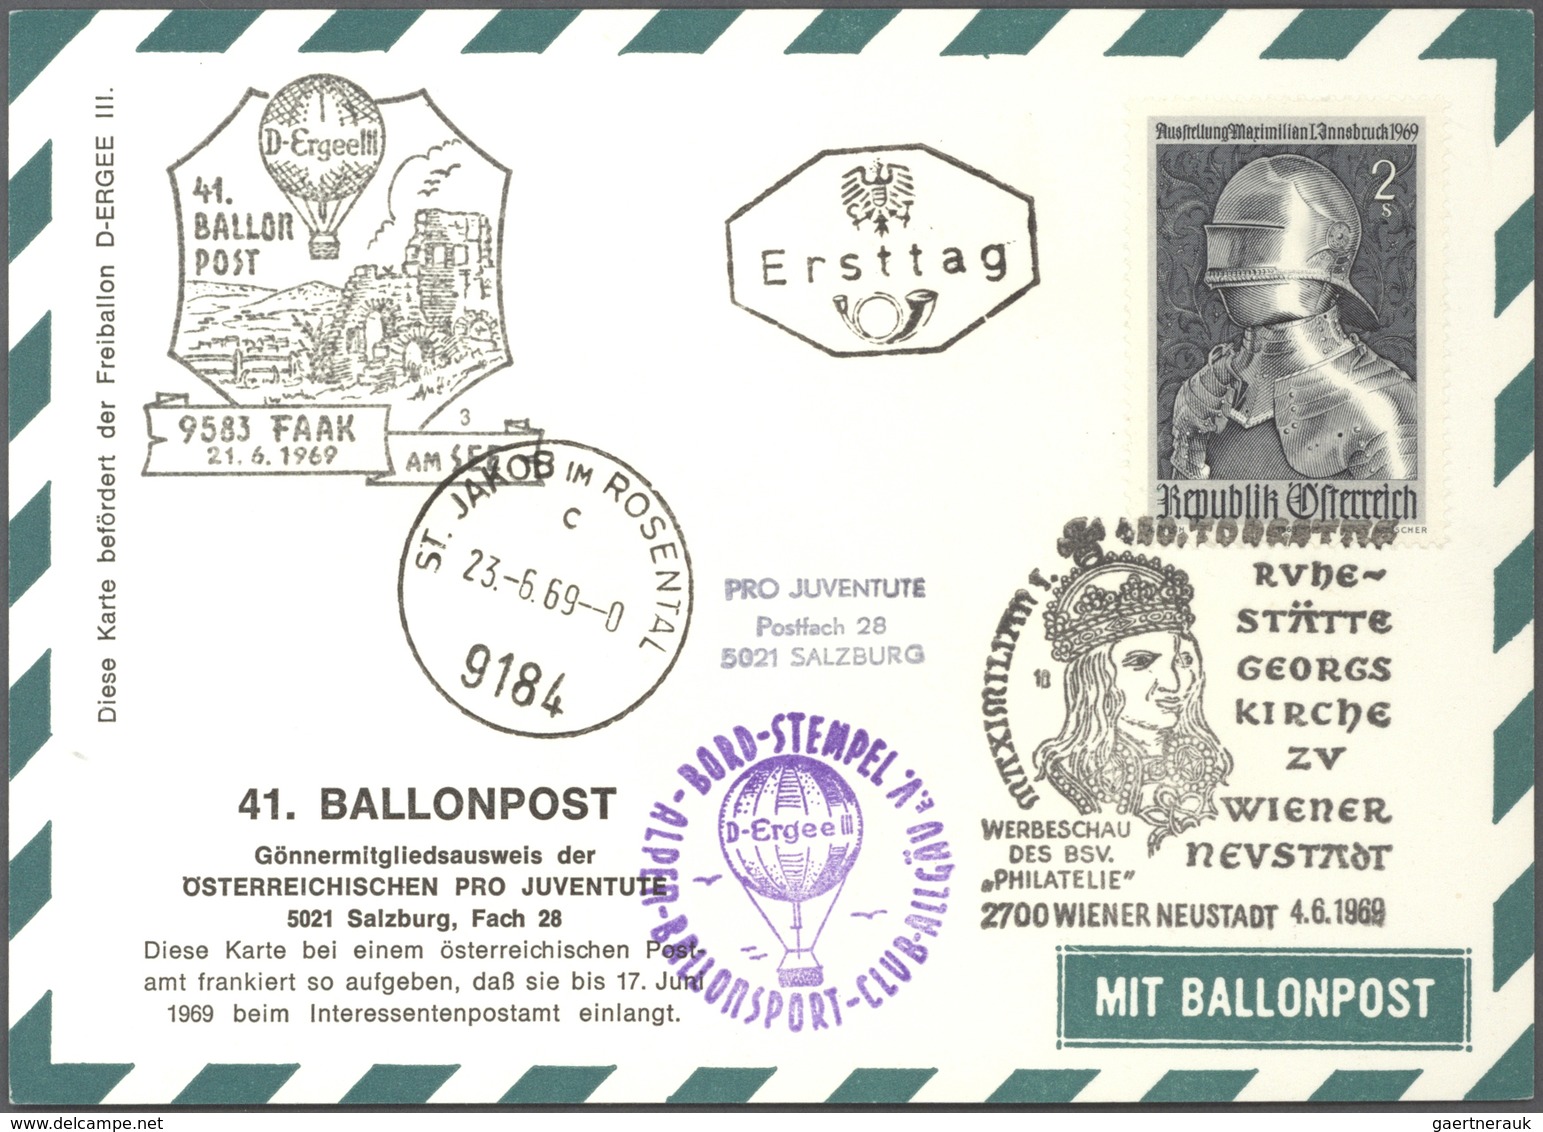 Ballonpost: ab 1950 (ca). GIGANTISCH: Der gesamte Bestand der PRO JUVENTUTE SALZBURG mit geschätzt 3